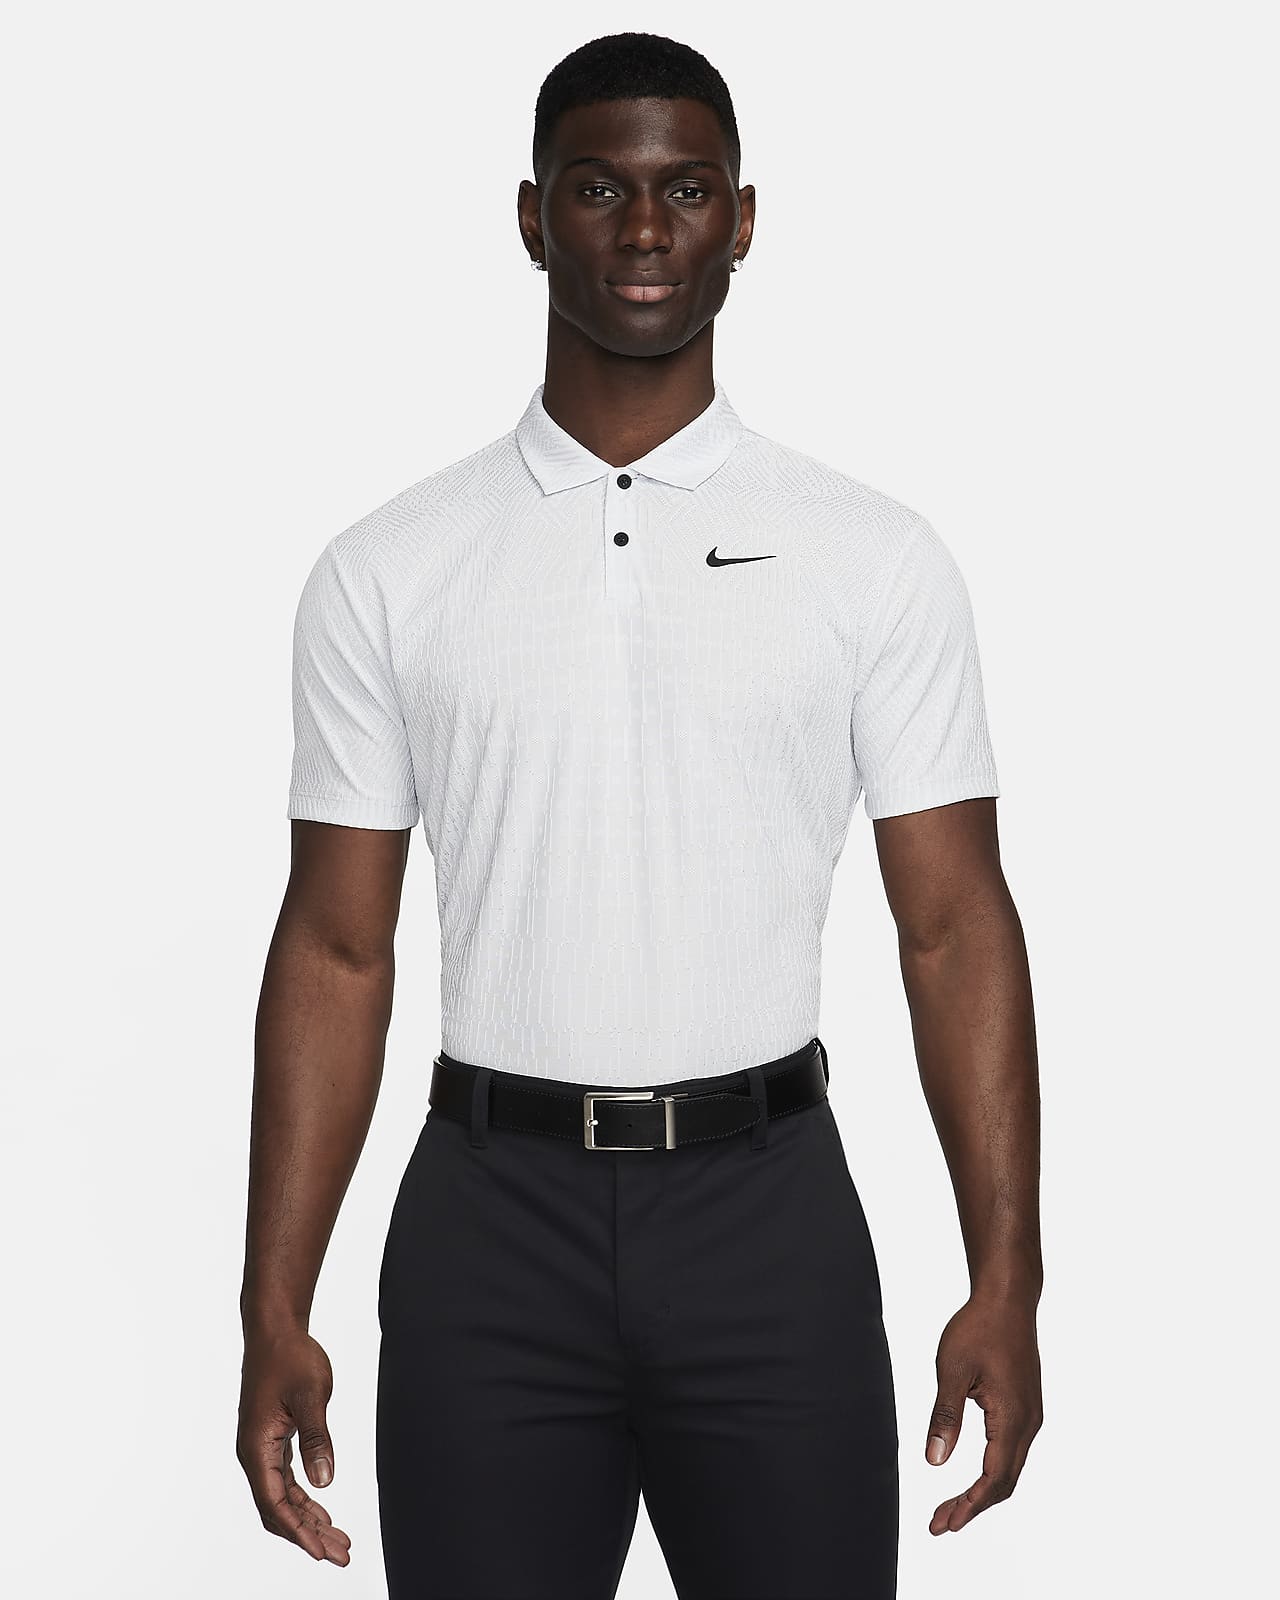 Ανδρική μπλούζα πόλο για γκολφ Dri-FIT ADV Nike Tour